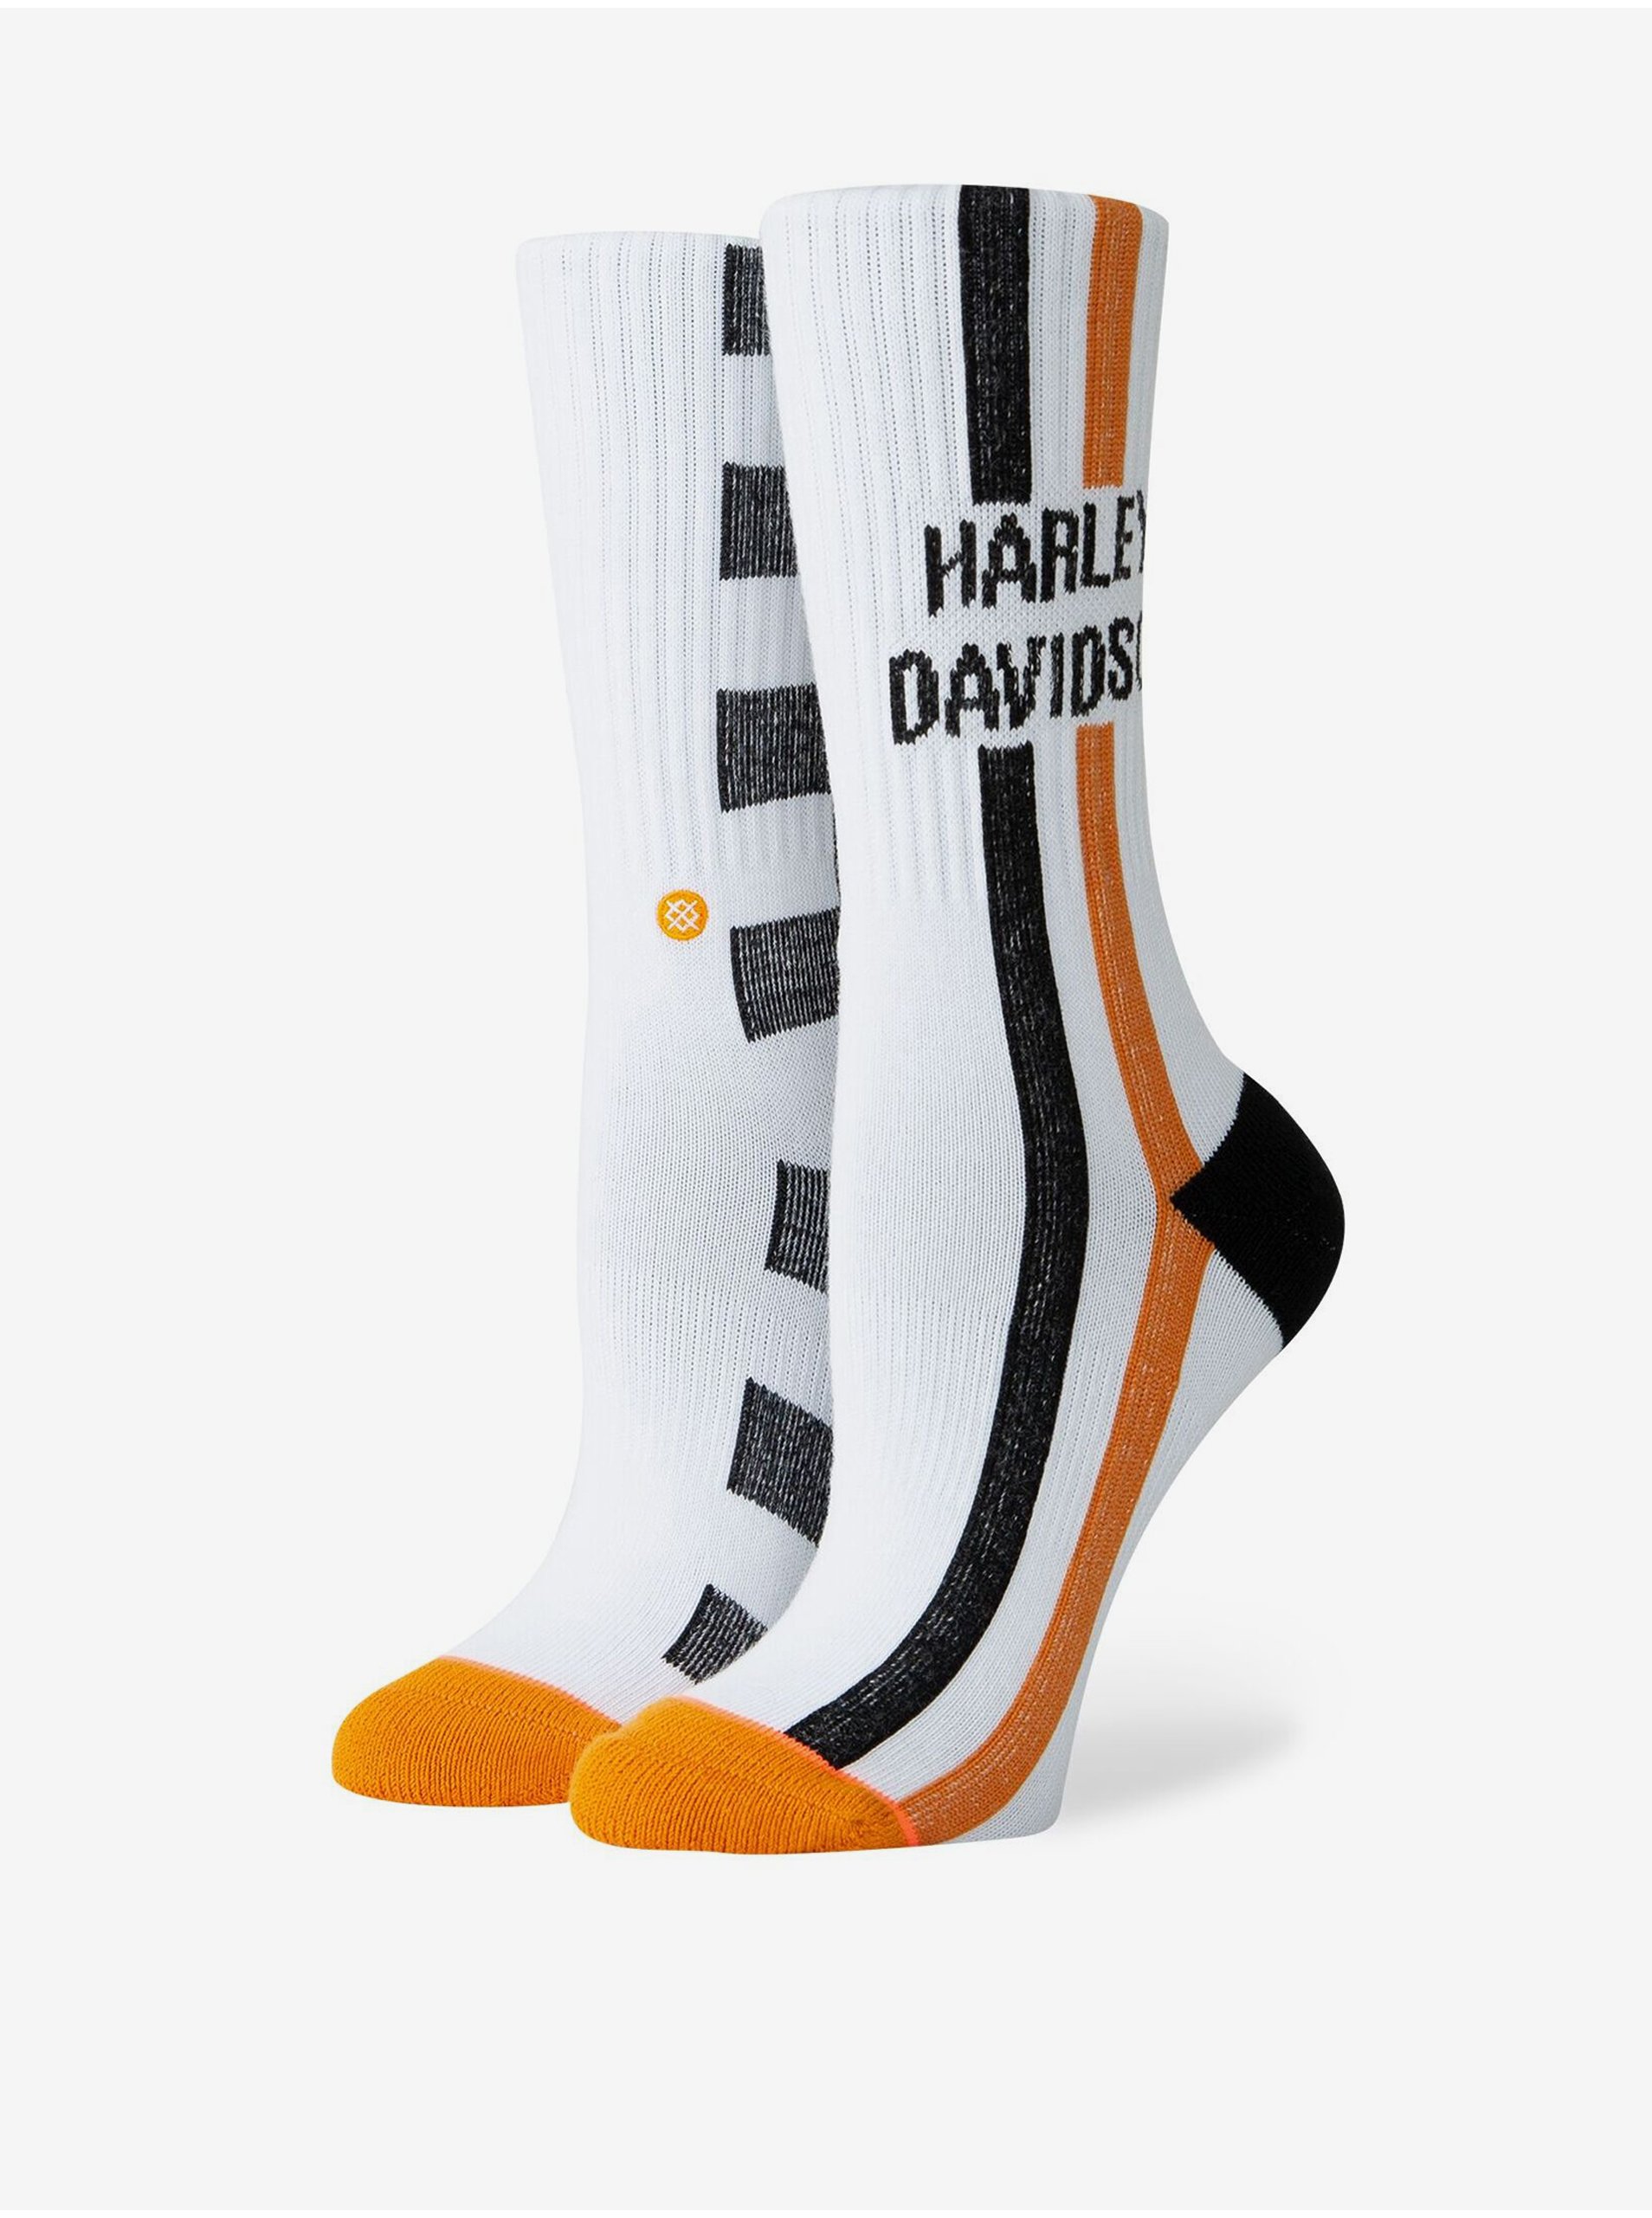 Lacno Biele dámske vzorované ponožky Stance Harley Checkers